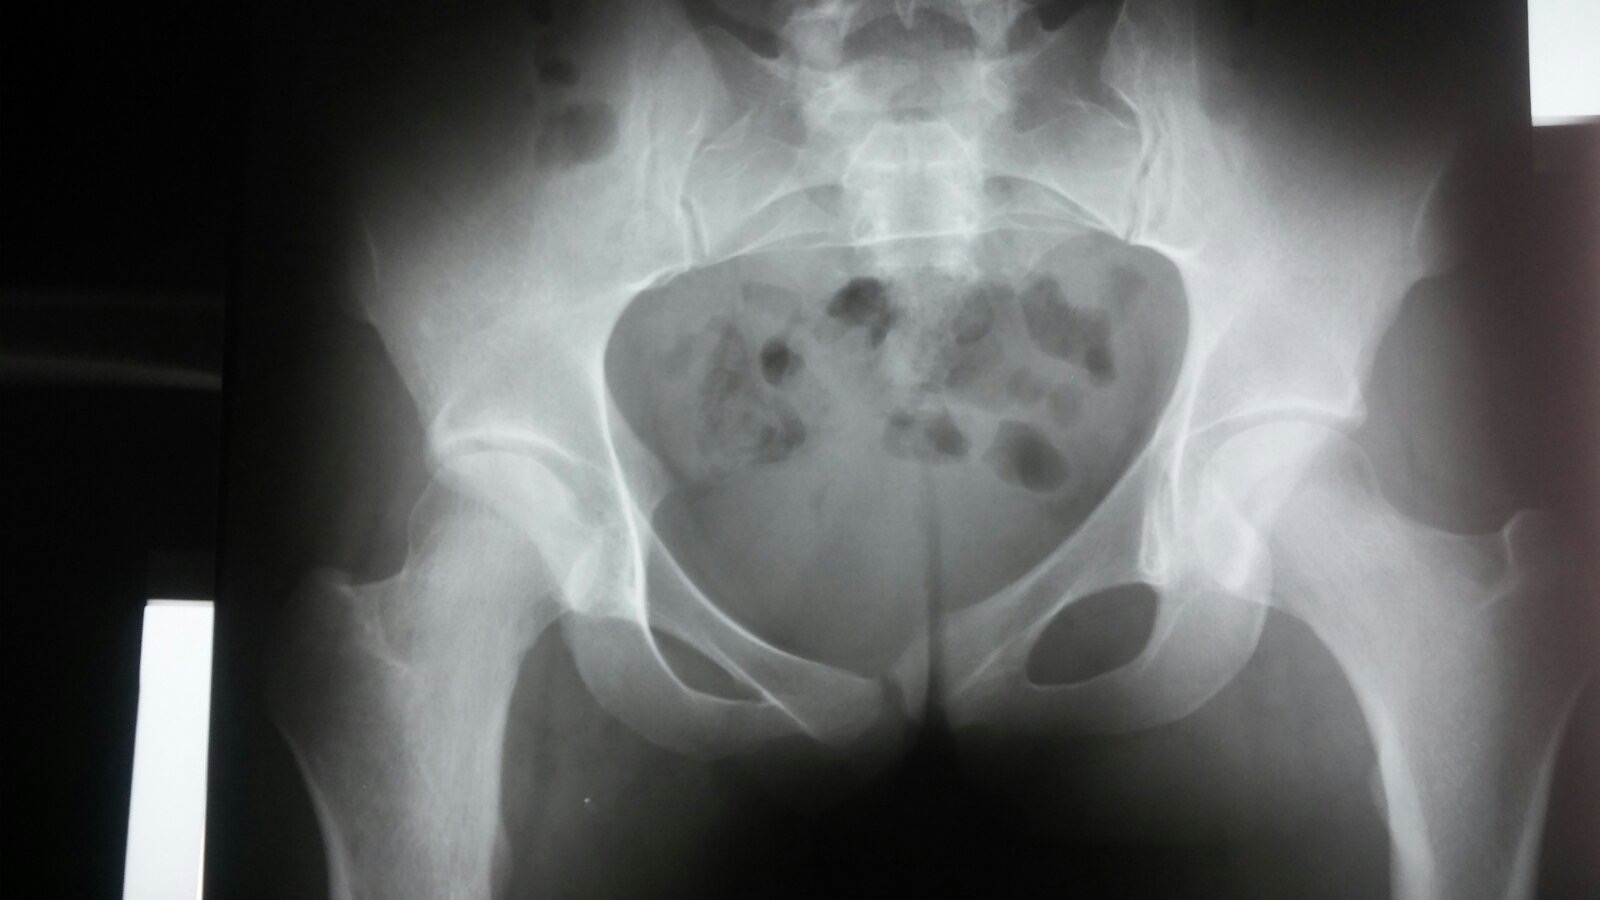 Метастазы в седалищной кости симптомы и признаки с фото